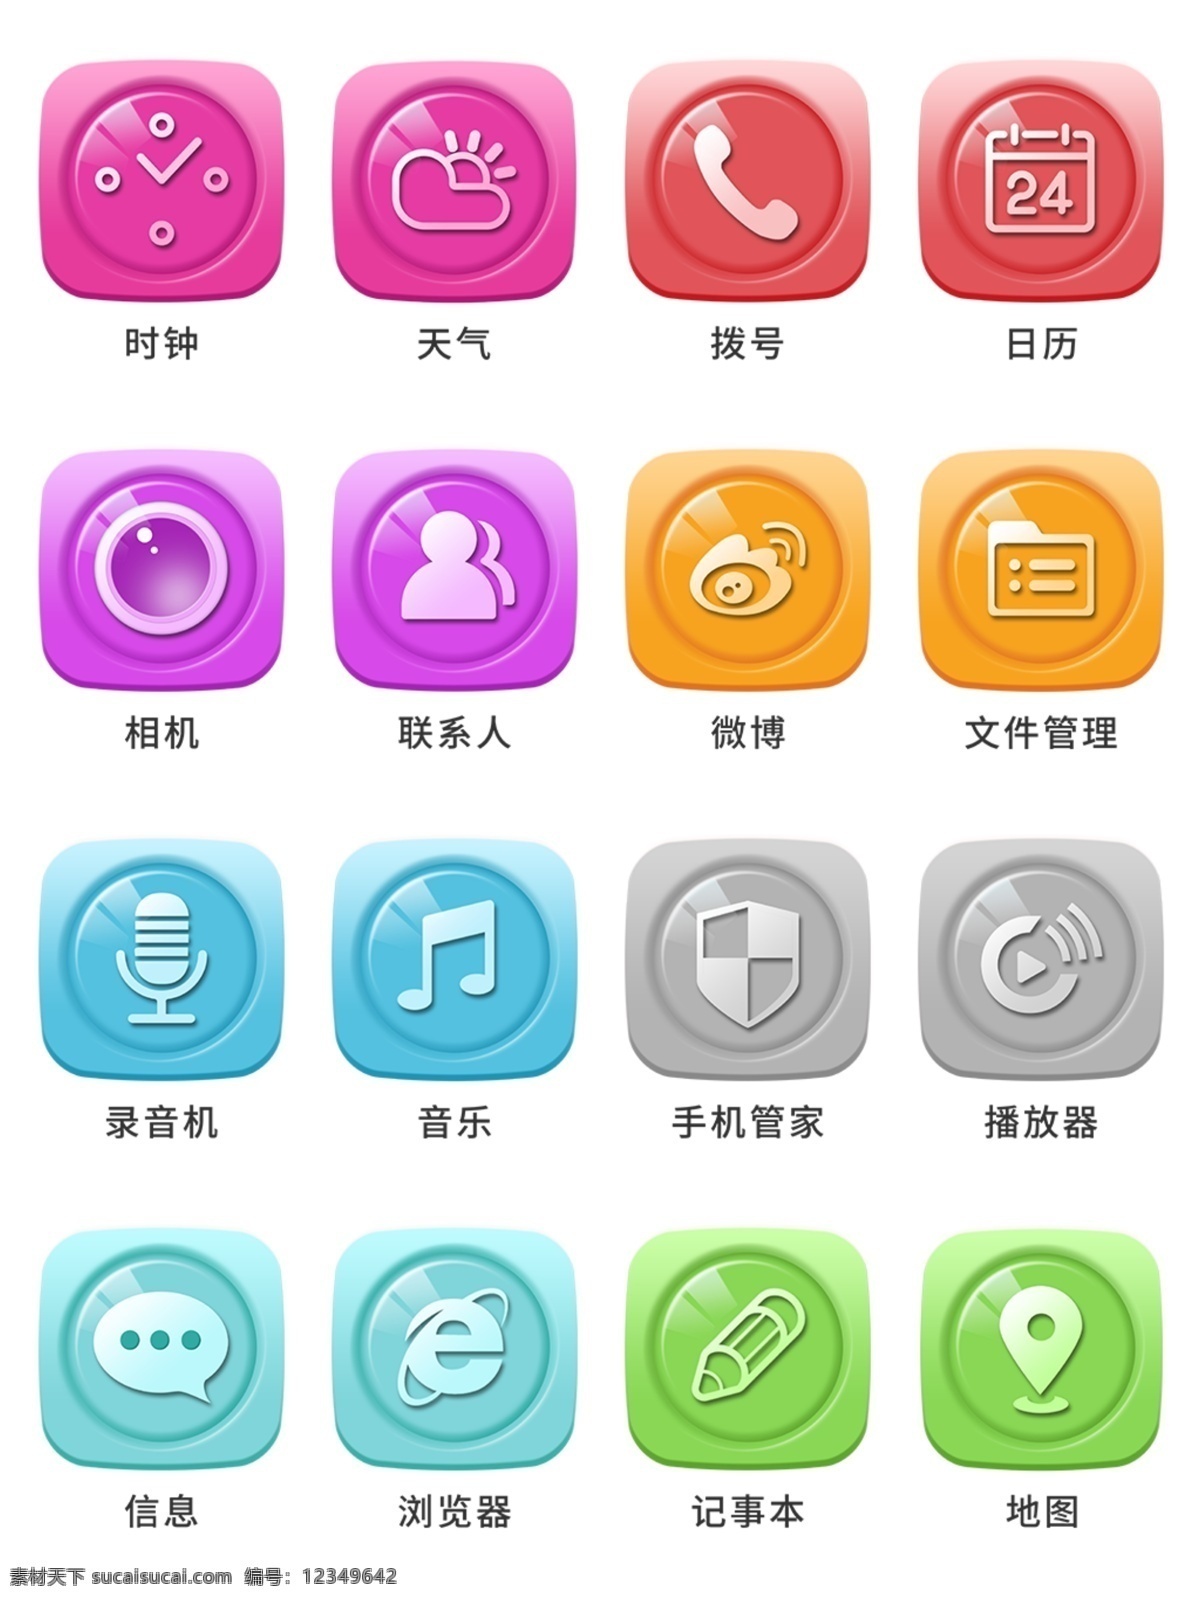 手机 多彩 浮雕 主题 图标 icon 元素 ui图标 彩色 设计元素 手机主题 图标按钮